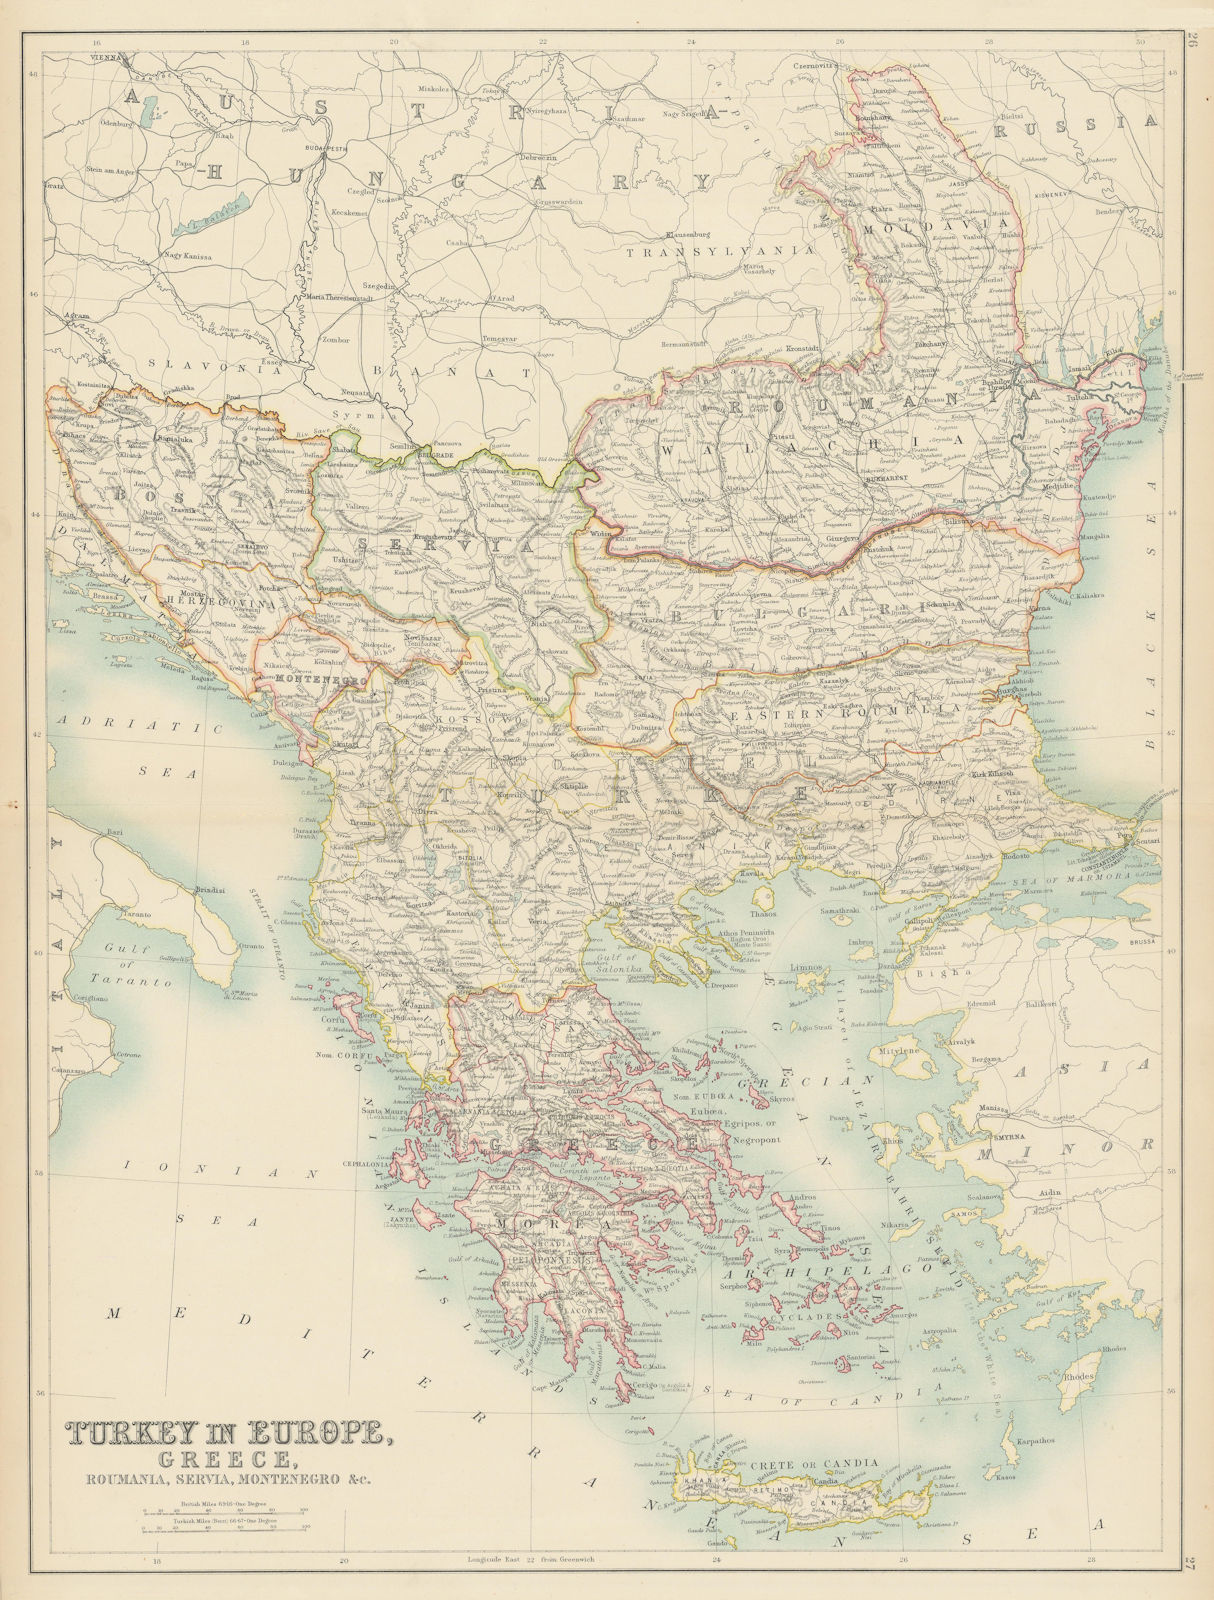 Balkans. Eastern Roumelia. Roumania Servia Bulgaria Greece. BARTHOLOMEW 1898 map